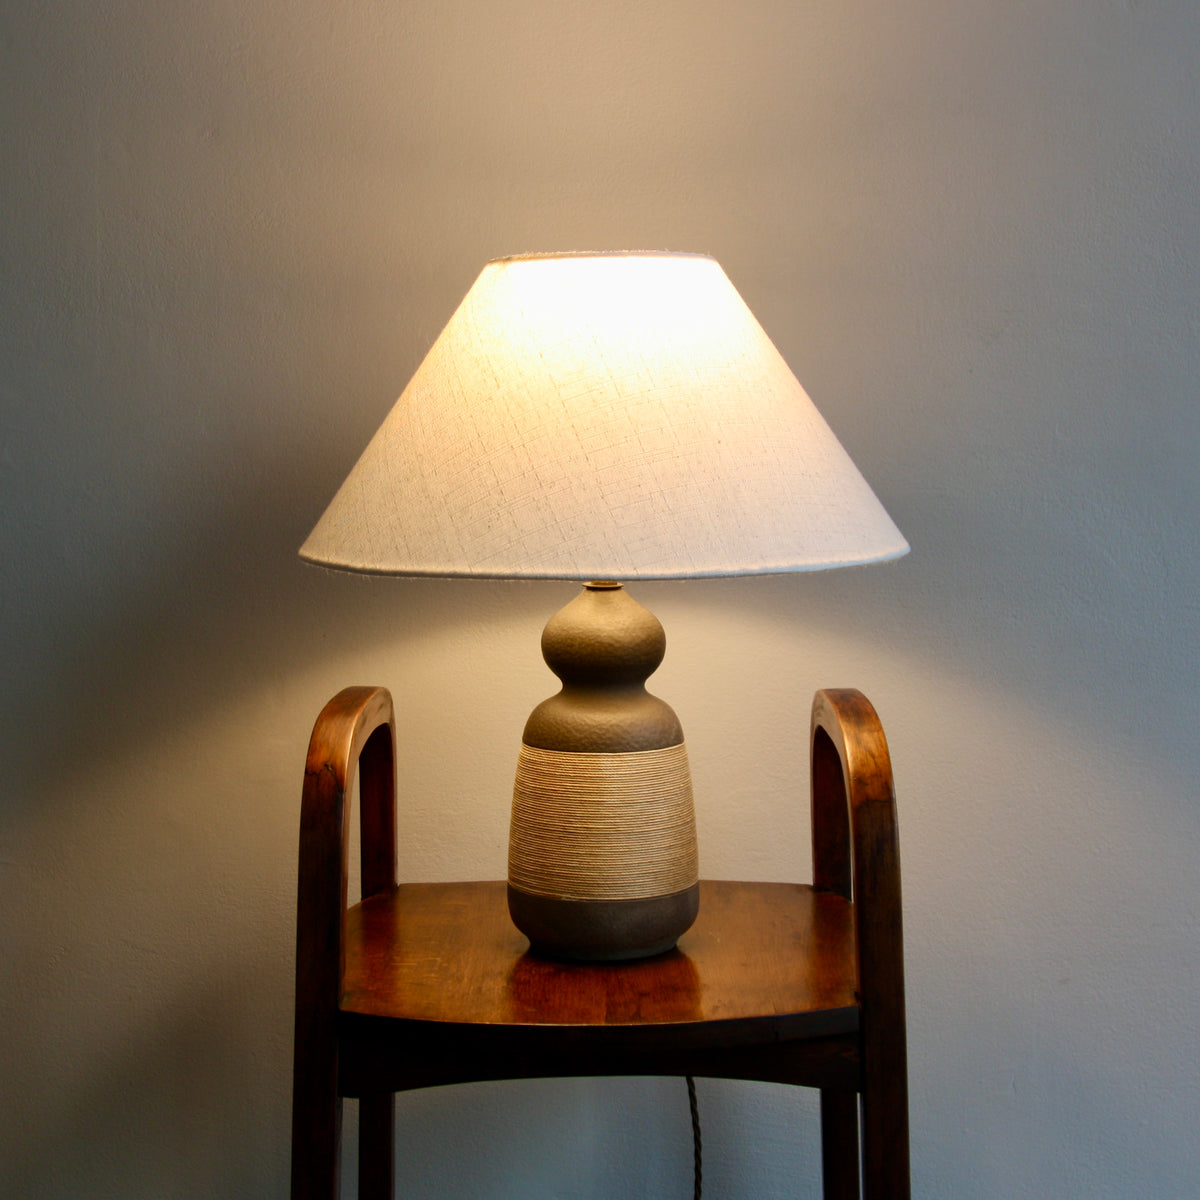 Gourd-Like Ceramic & Rope Table Lamp / Denmark, 1950s